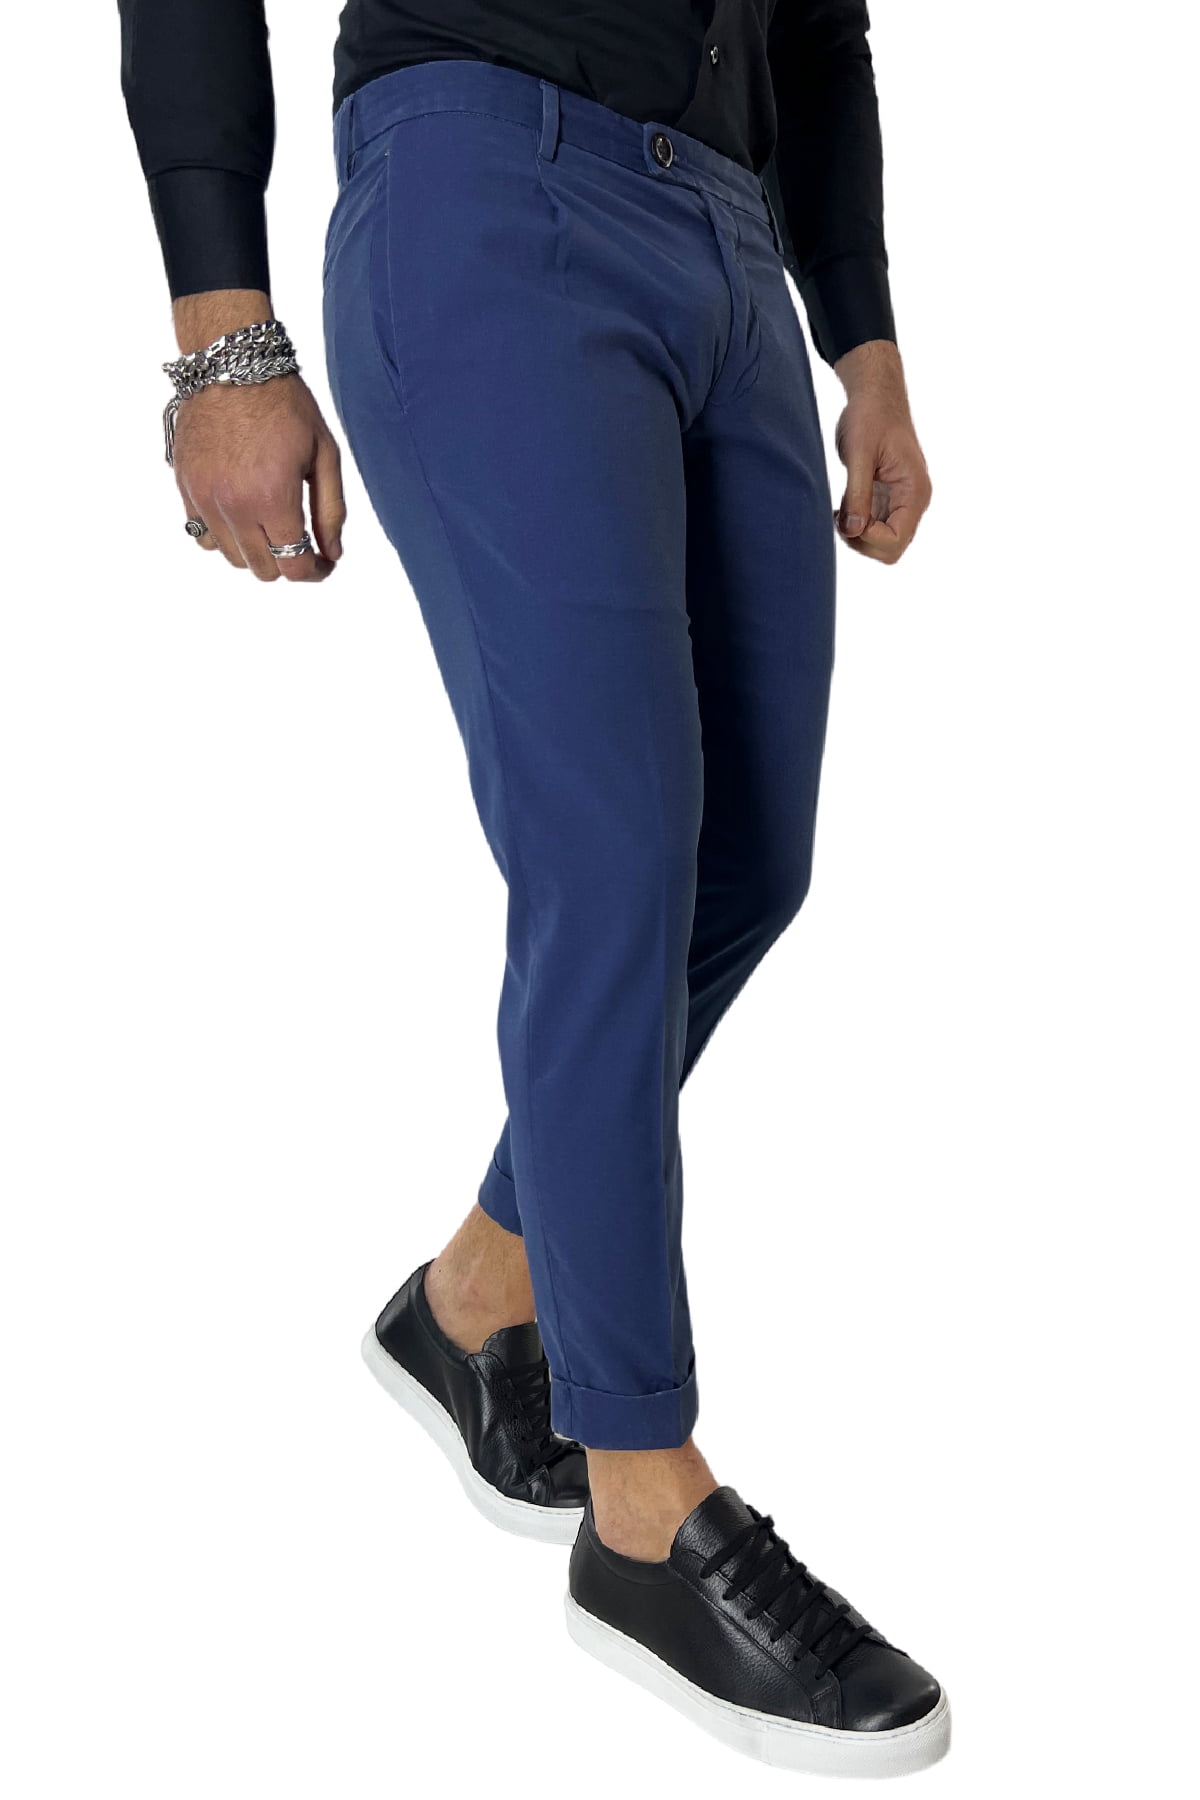 Pantalone uomo bluette in cotone tasca a filo slim fit sartoriale con pence